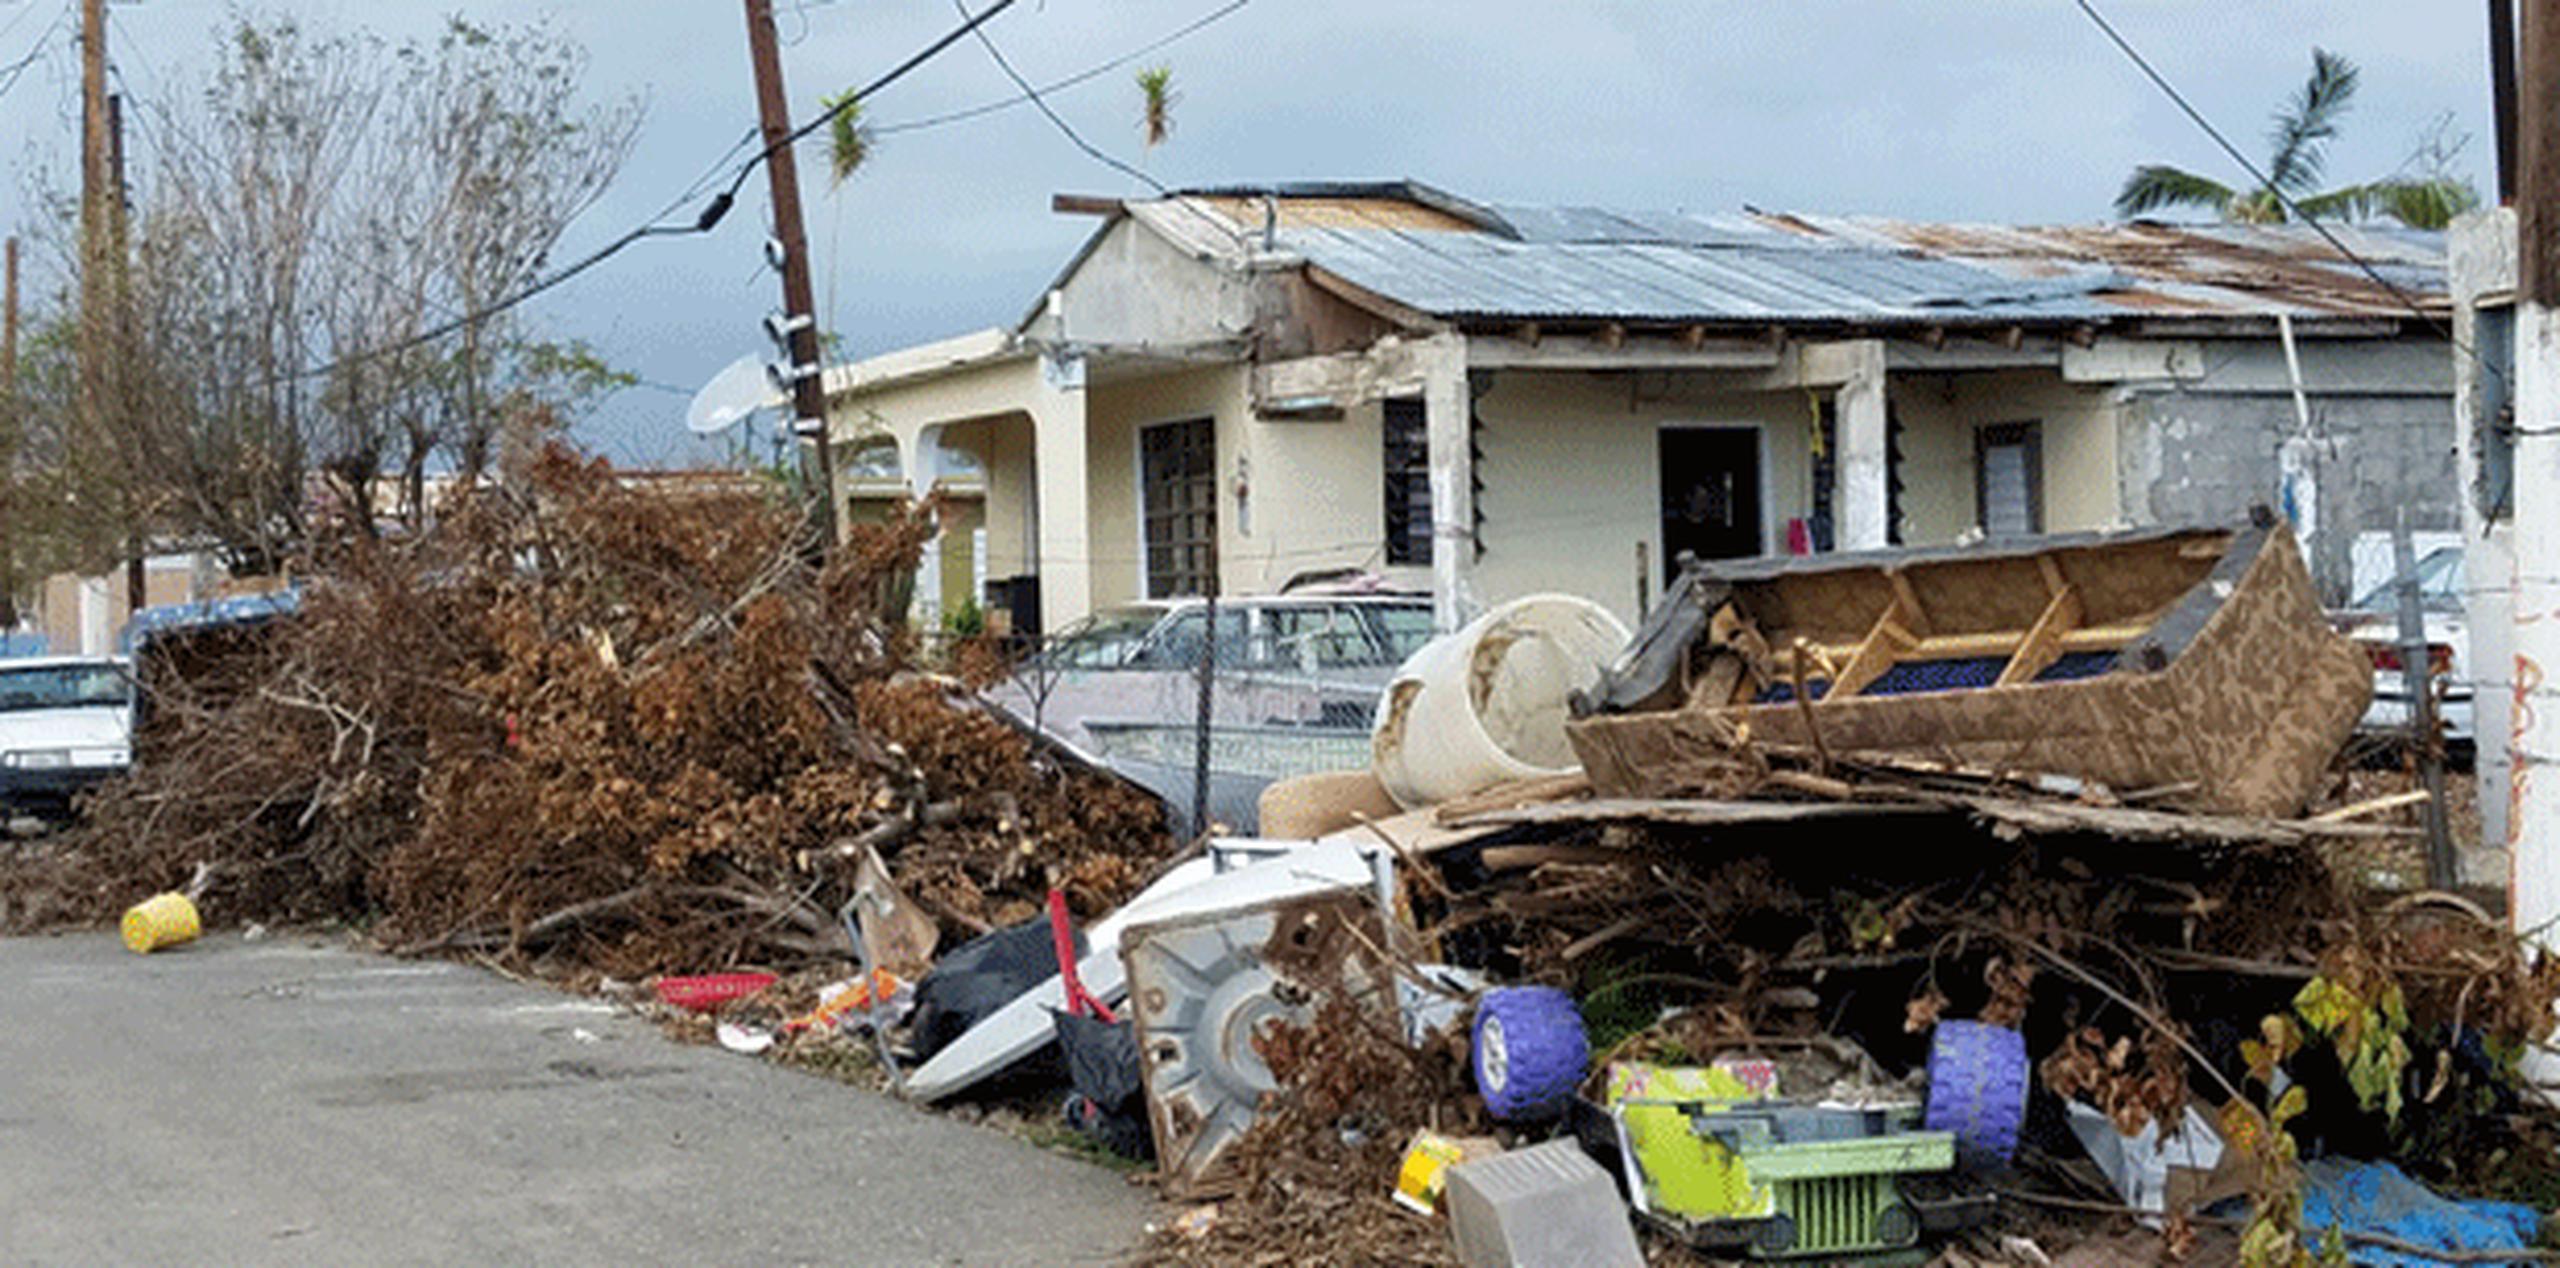 En todo el barrio, fueron menos de 20 personas las que tuvieron el atrevimiento de quedarse a pasar el ciclón en una zona inundable que fue desalojada por las autoridades. (michelle.estrada@gfrmedia.com)